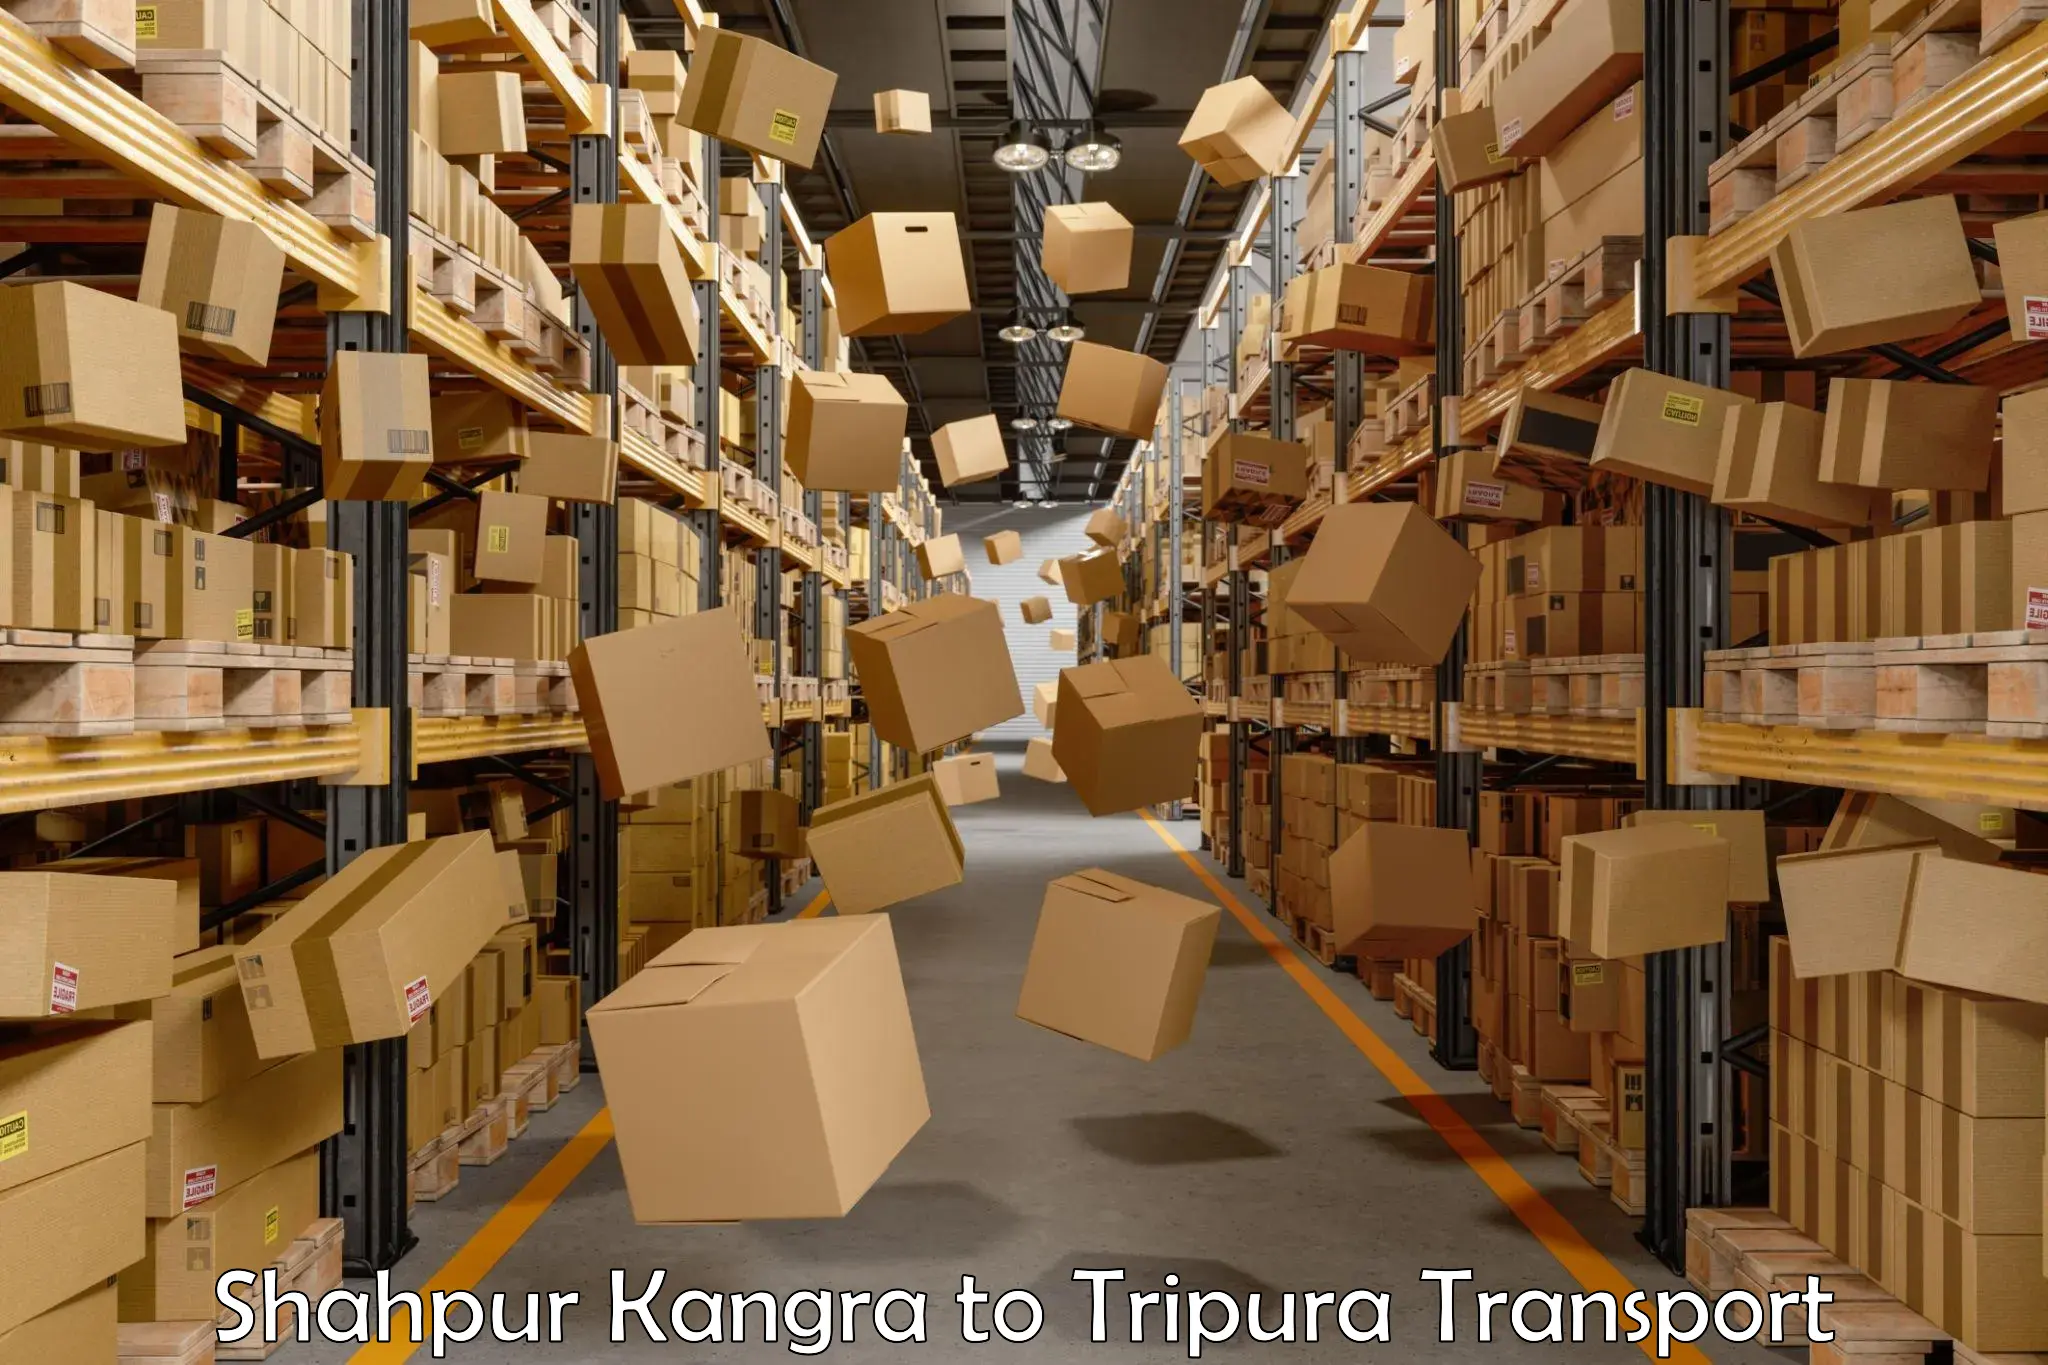 Commercial transport service Shahpur Kangra to Kumarghat